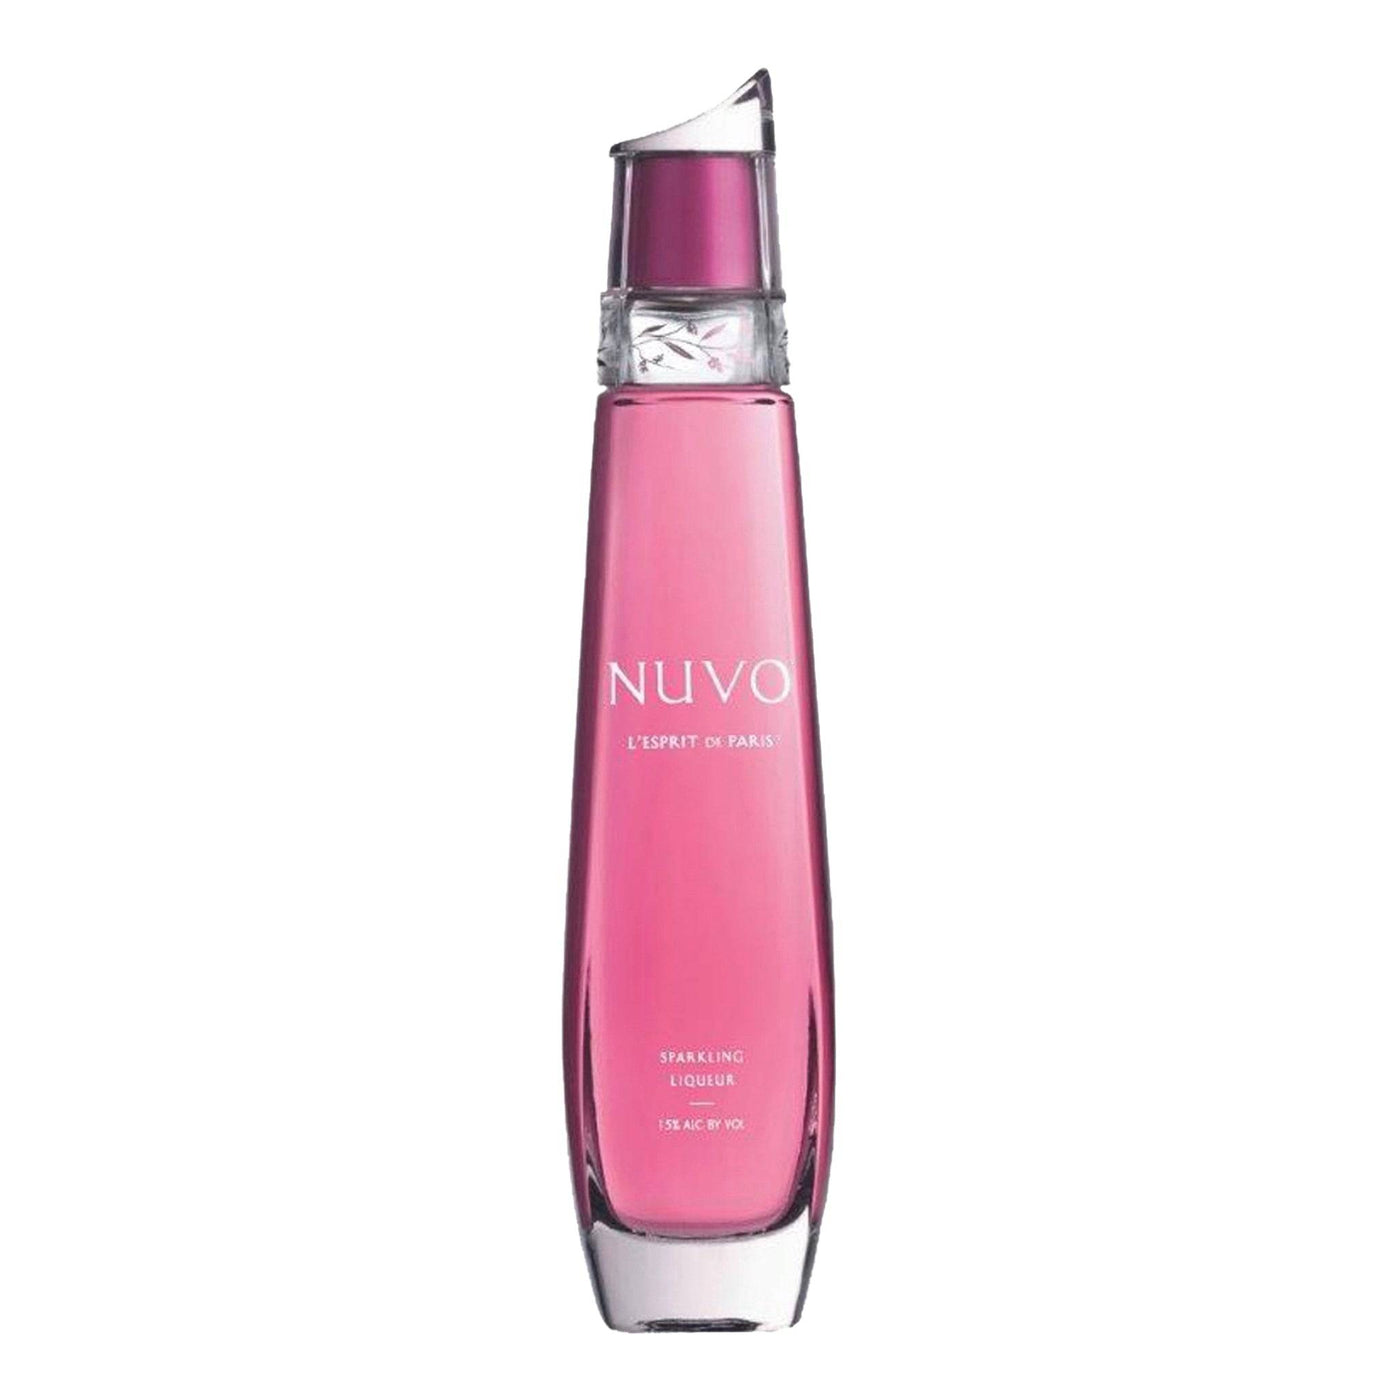 Nuvo Sparkling Vodka - Spiritly